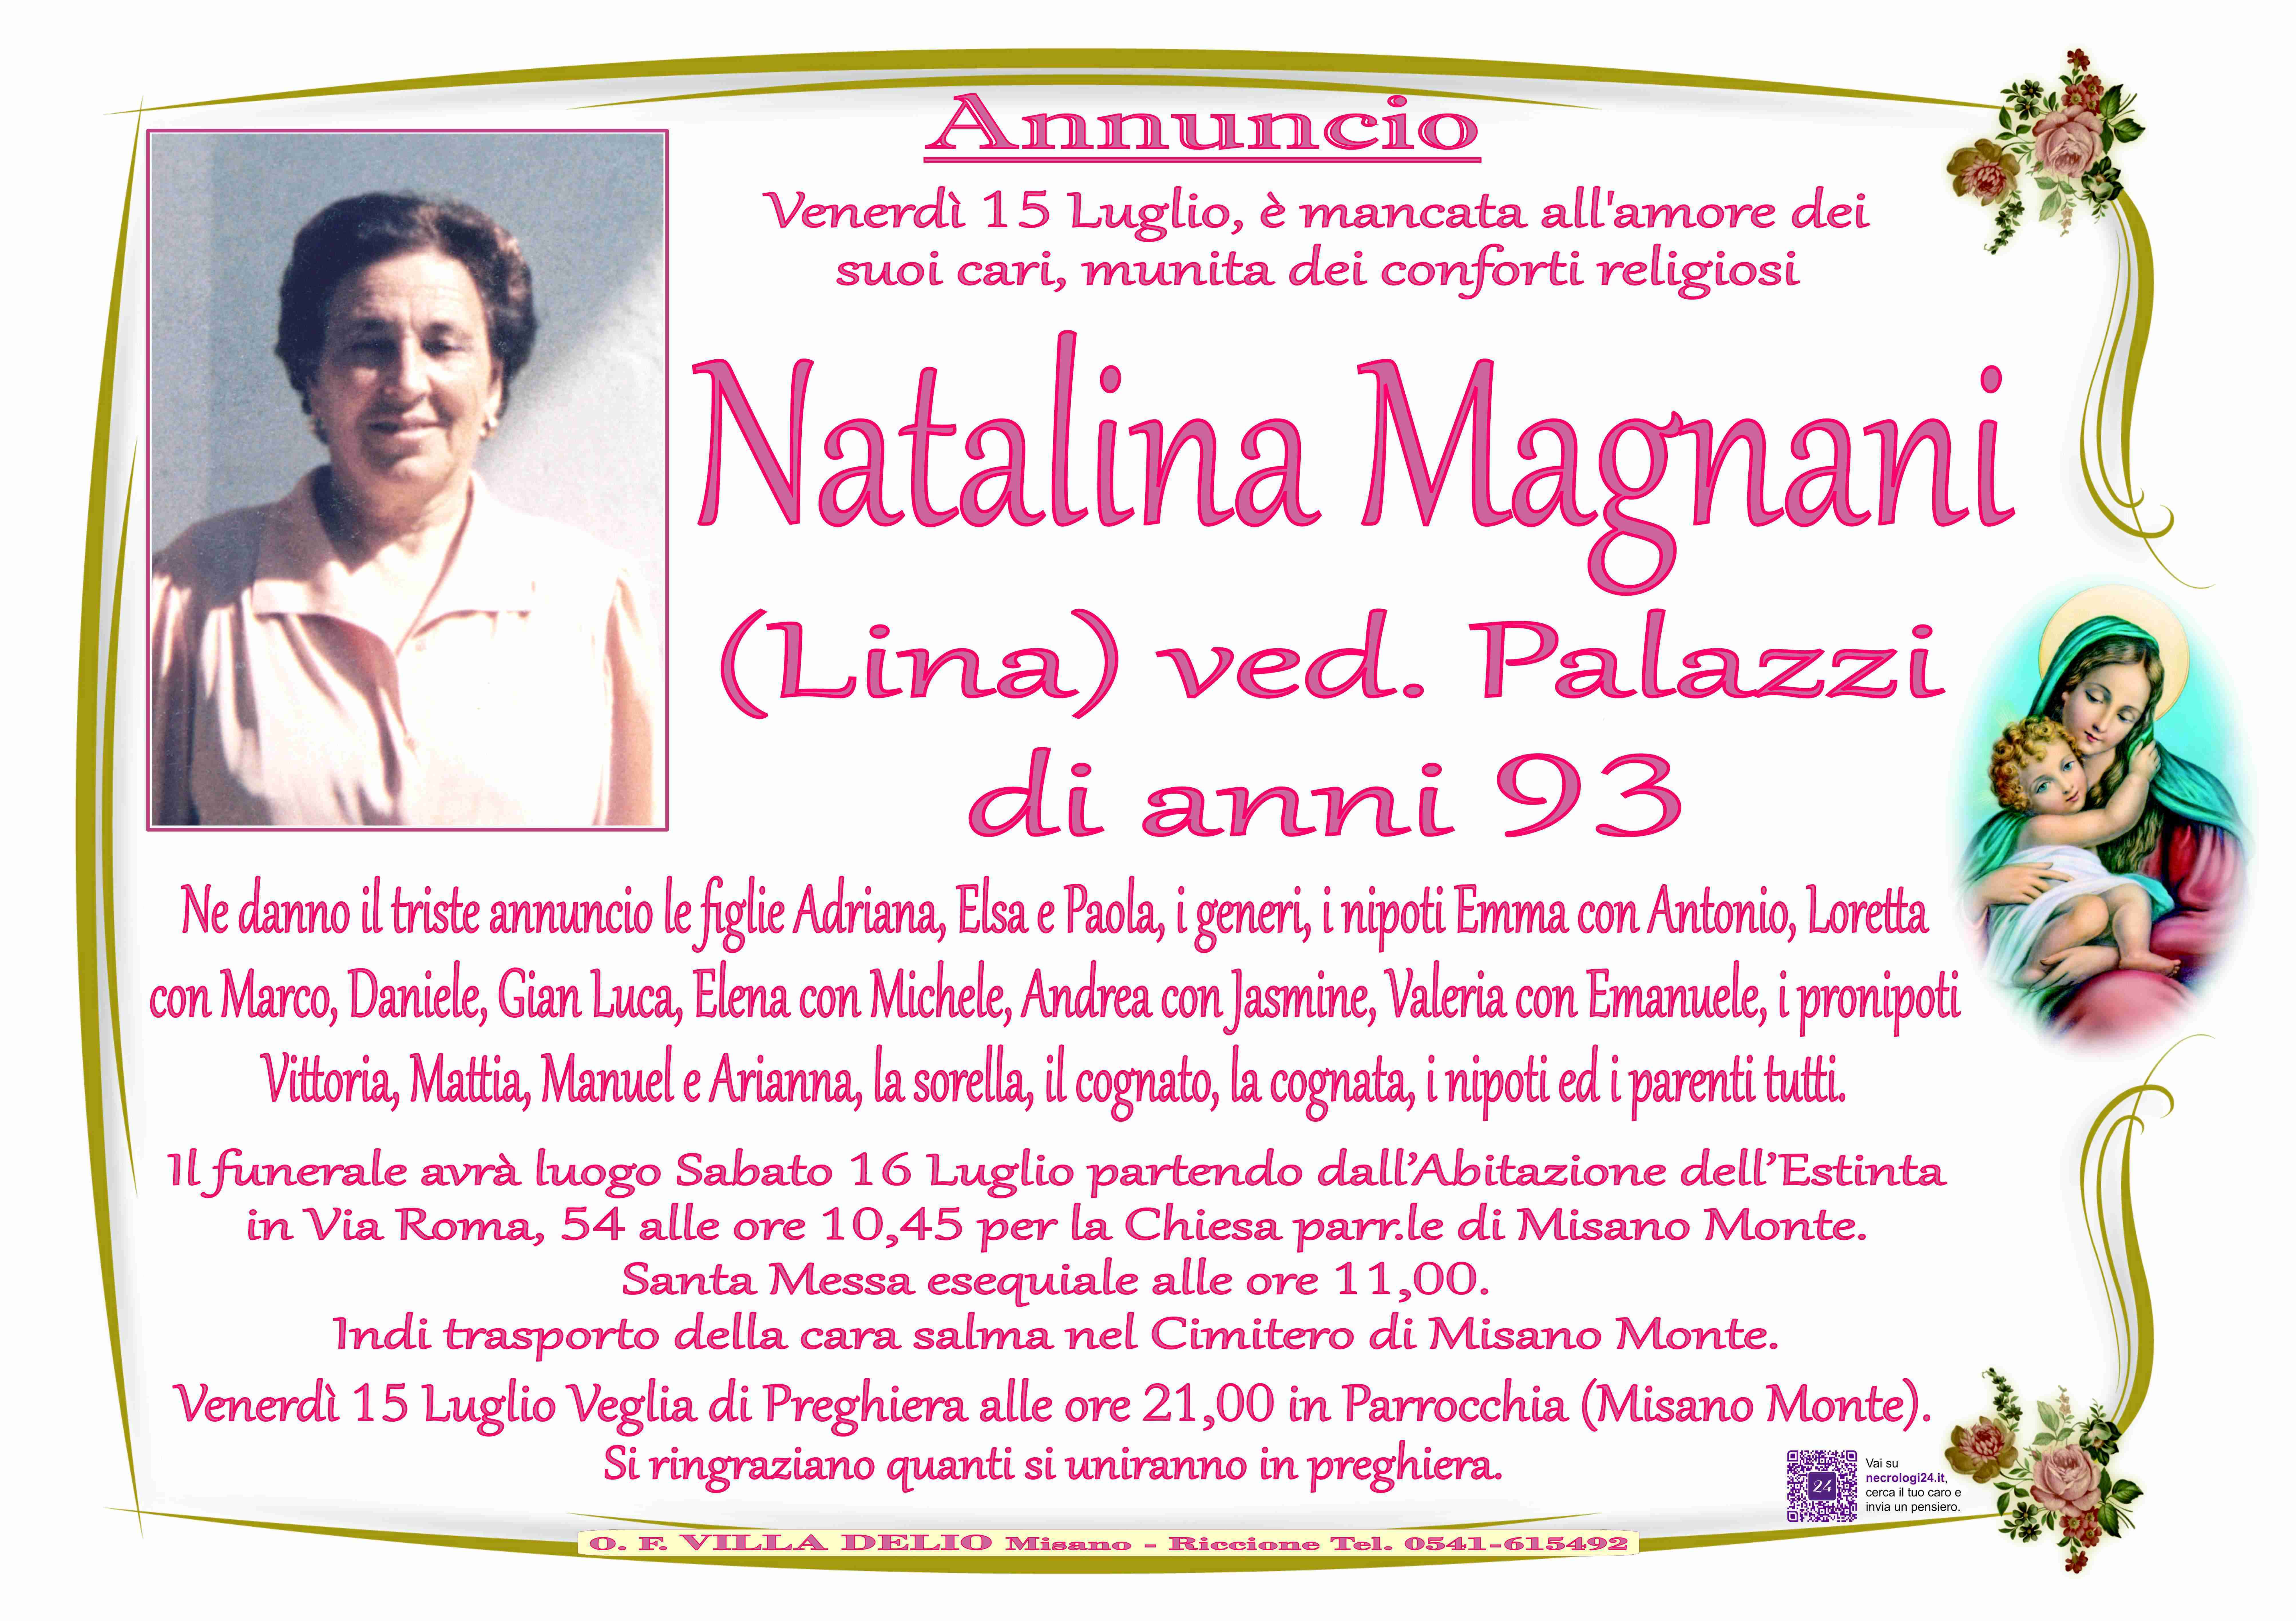 Natalina Magnani